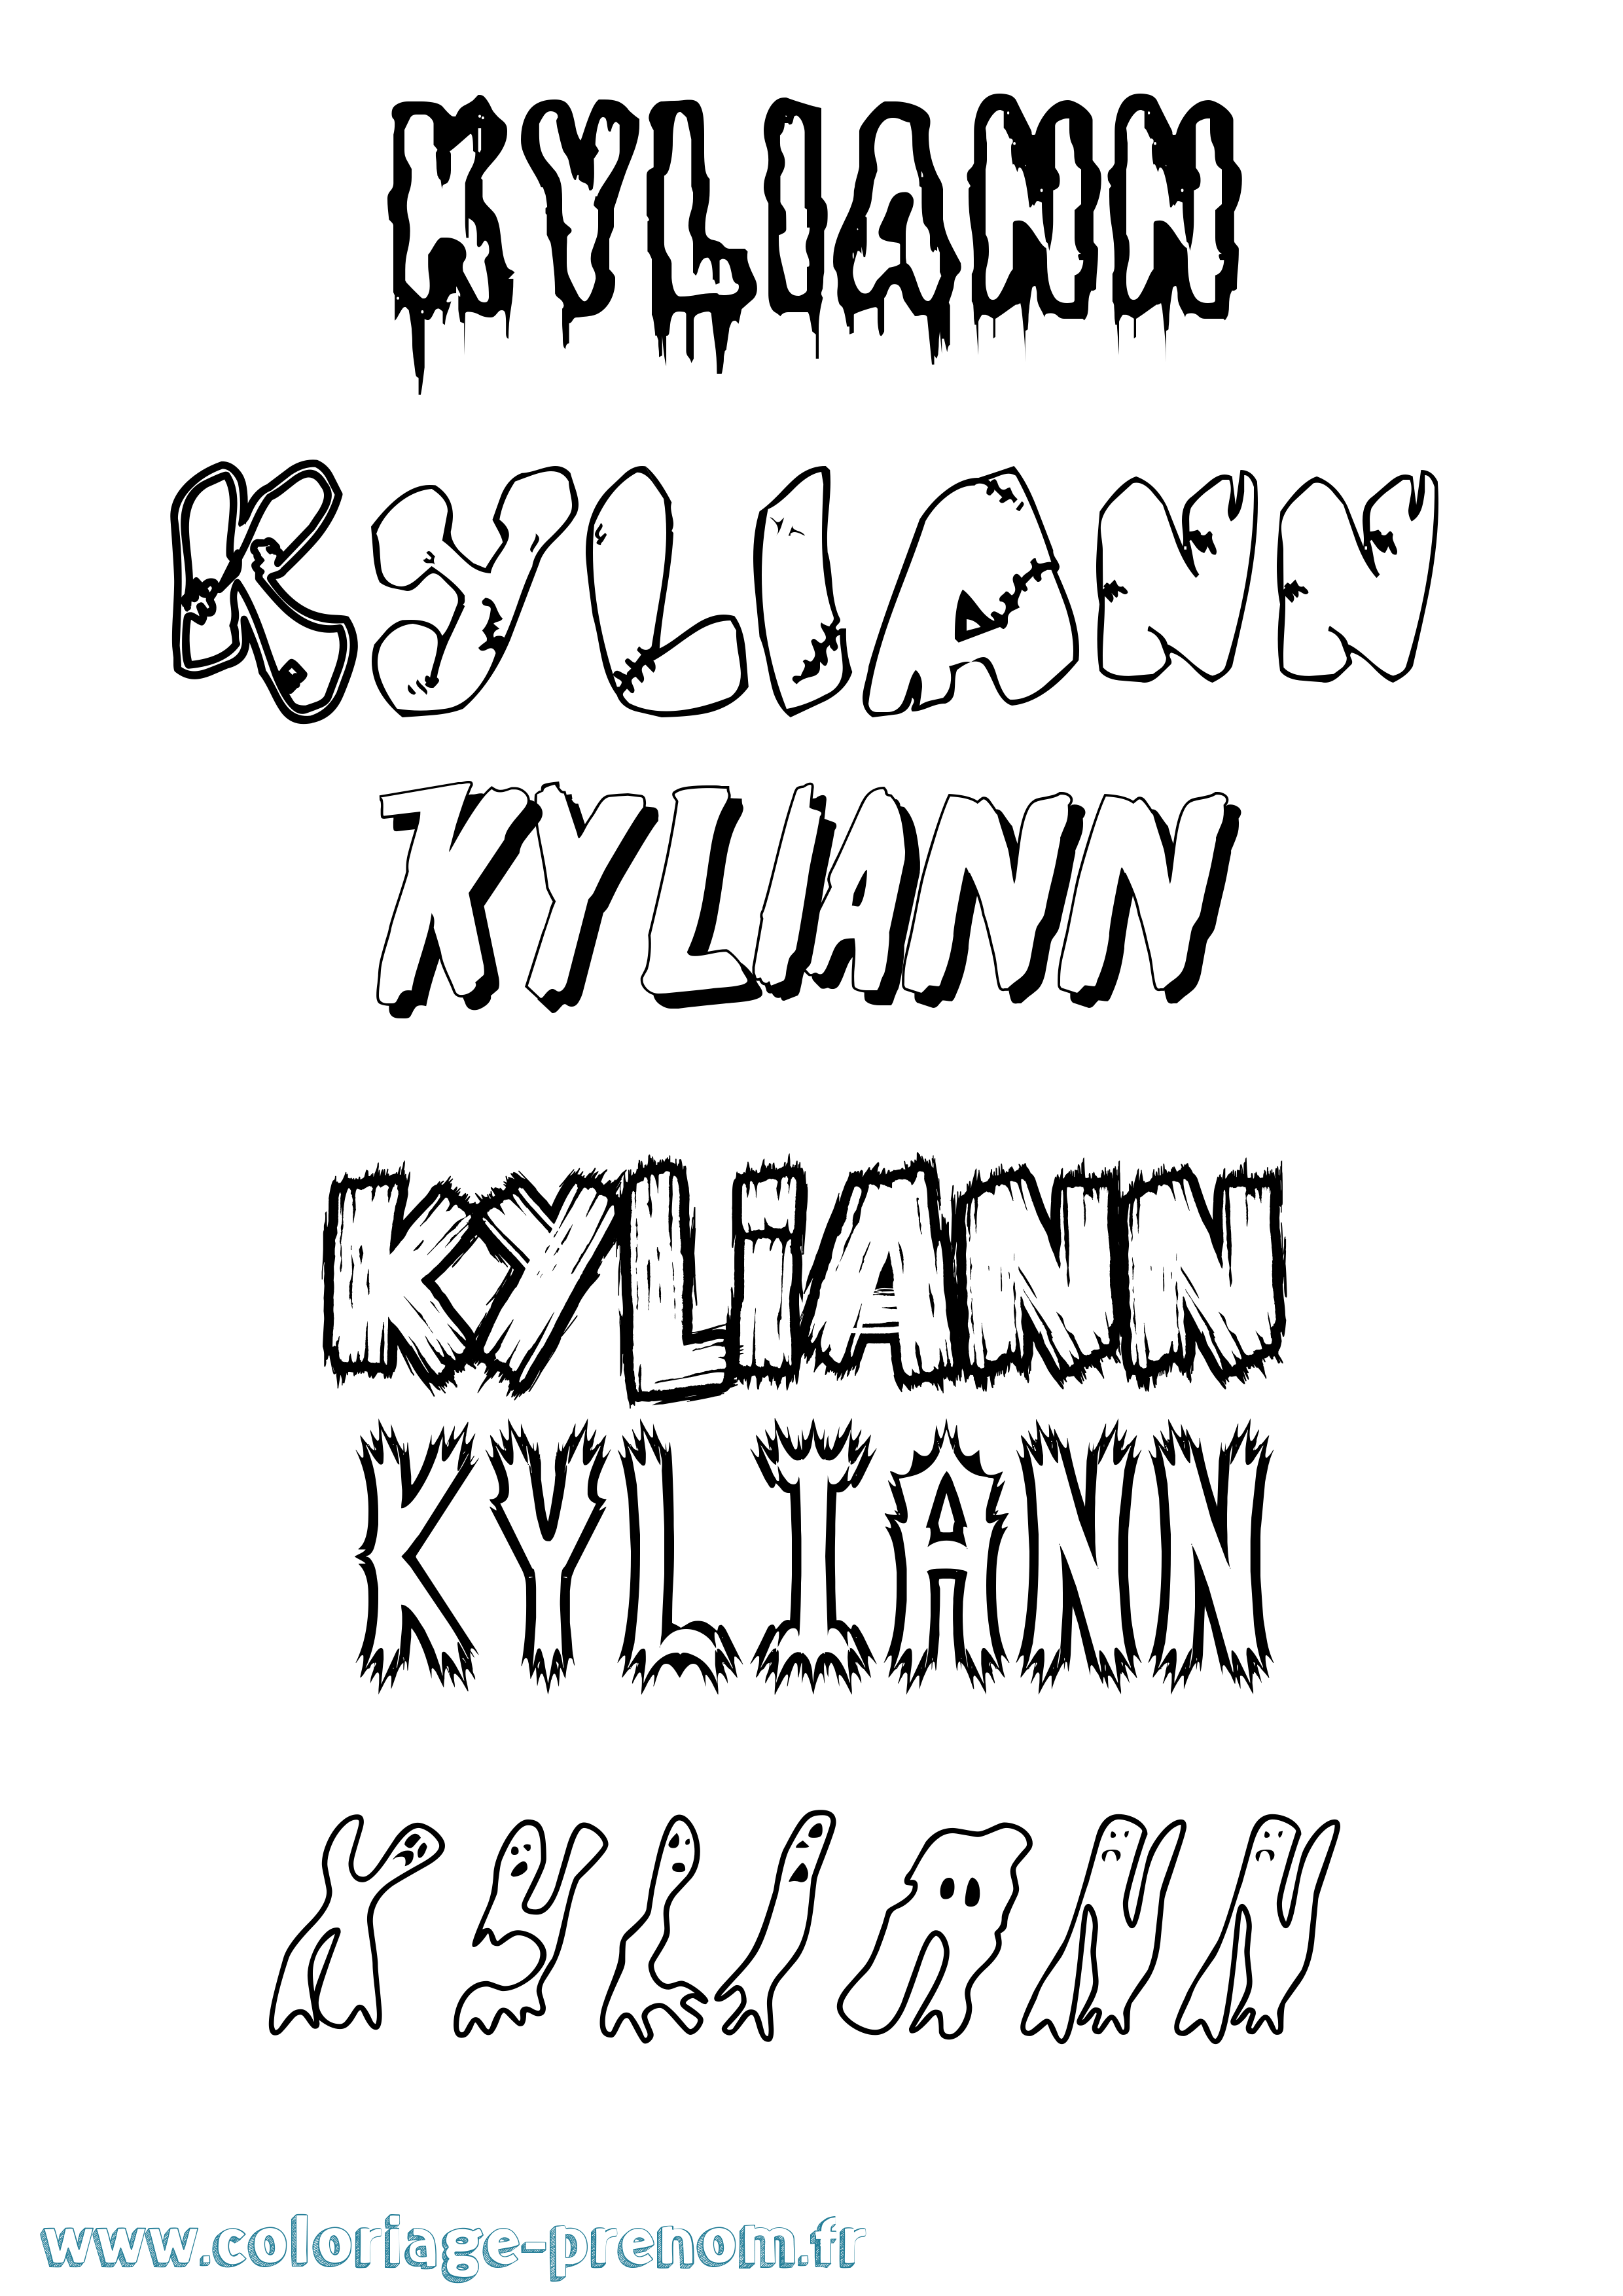 Coloriage prénom Kyliann